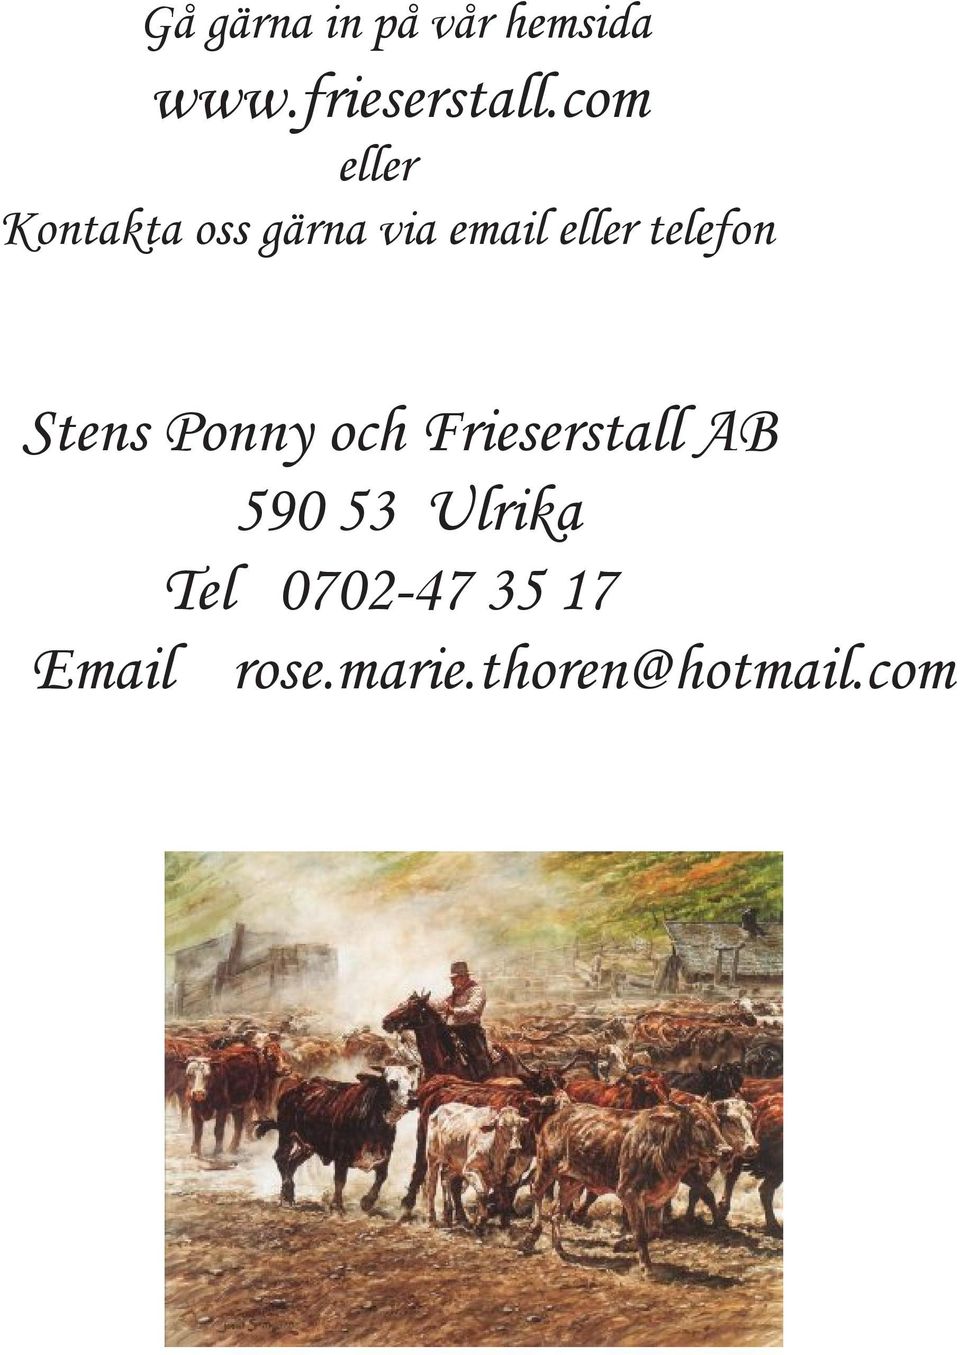 telefon Stens Ponny och Frieserstall AB 590 53